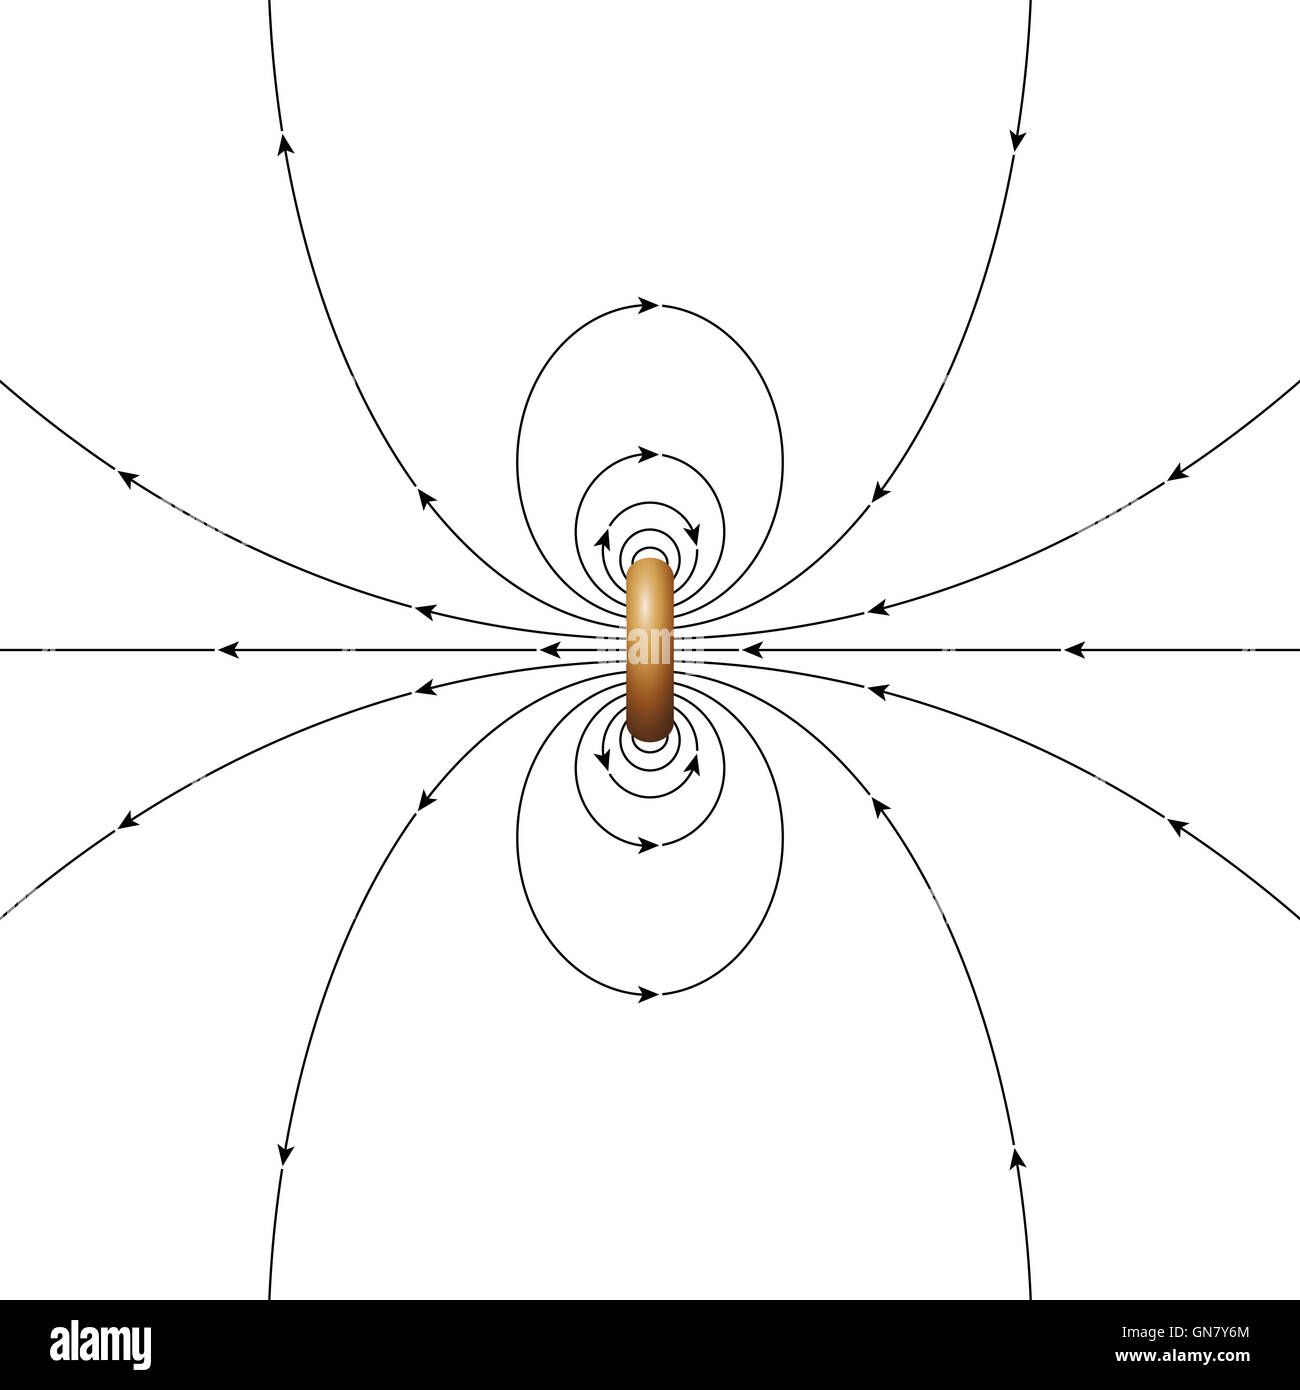 Le linee del campo magnetico di una corrente ad anello di diametro finito. Le frecce indicano la direzione del campo magnetico. Illustrazione Foto Stock